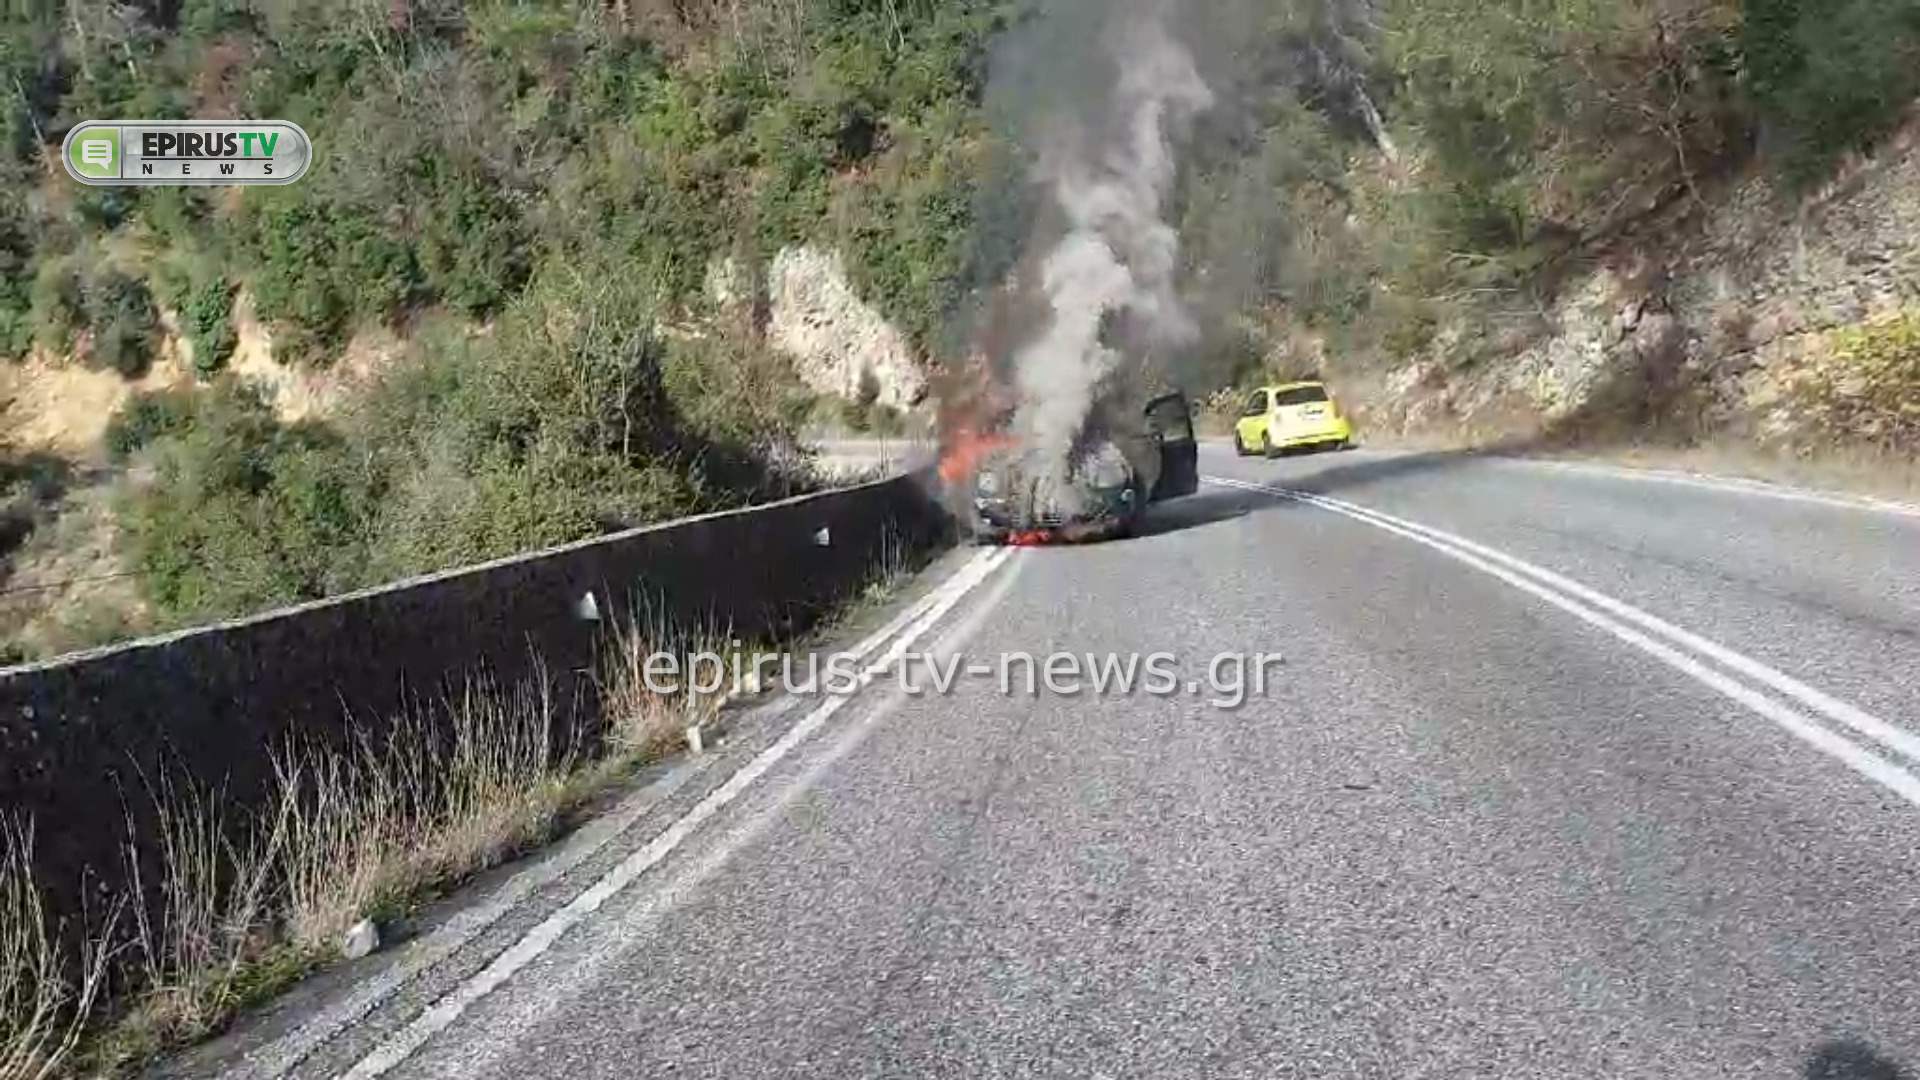 Γιάννενα: Η στιγμή που αυτοκίνητο παίρνει φωτιά από μηχανική βλάβη – Βίντεο